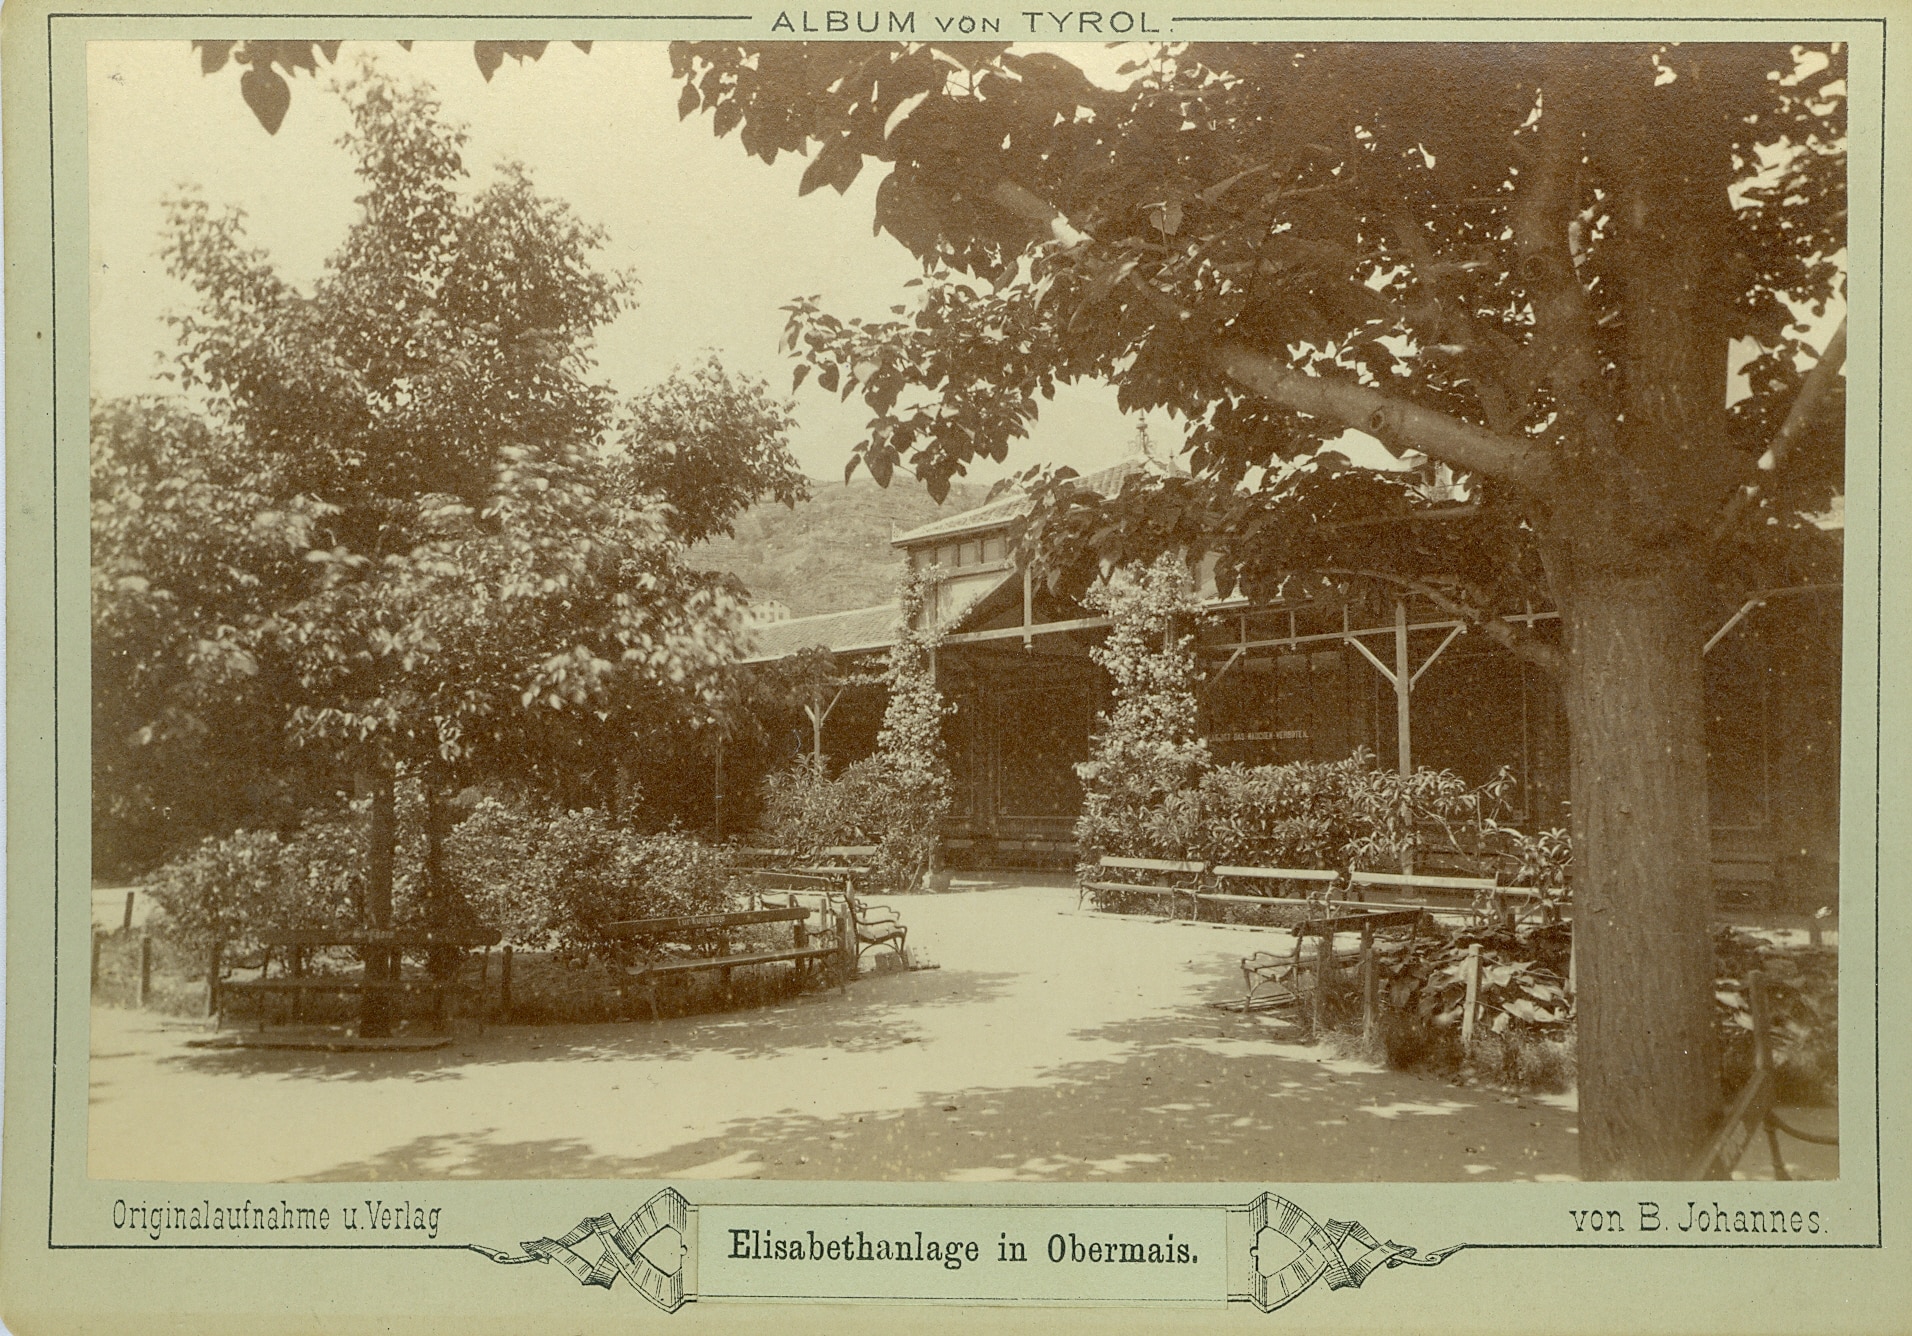 Historische Fotografie der Elisabeth-Anlage in Obermais